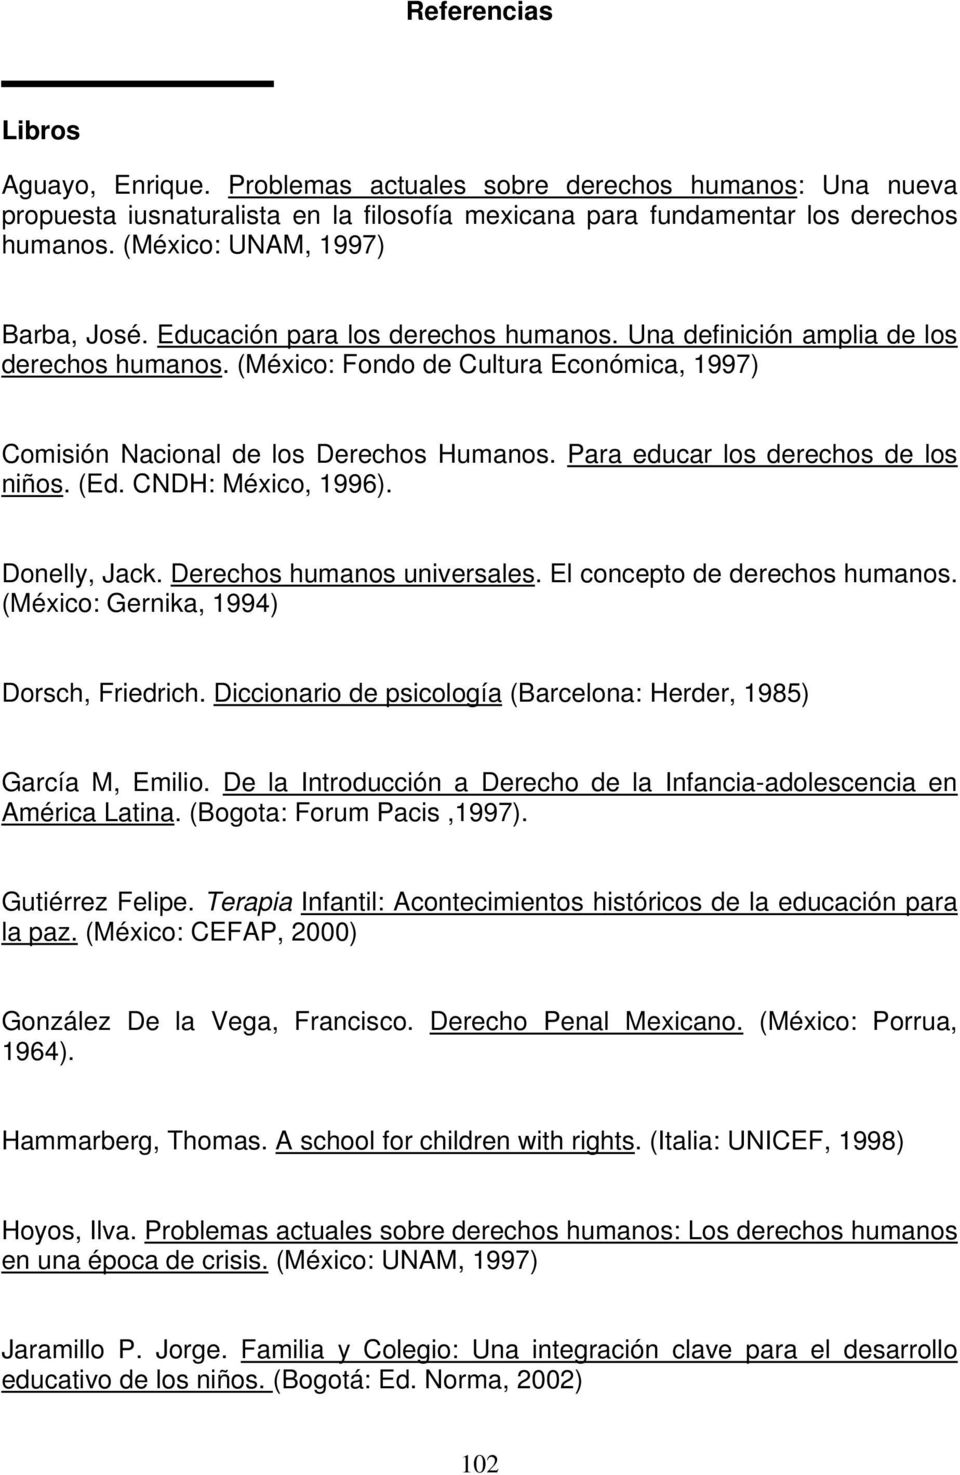 (México: Fondo de Cultura Económica, 1997) Comisión Nacional de los Derechos Humanos. Para educar los derechos de los niños. (Ed. CNDH: México, 1996). Donelly, Jack. Derechos humanos universales.